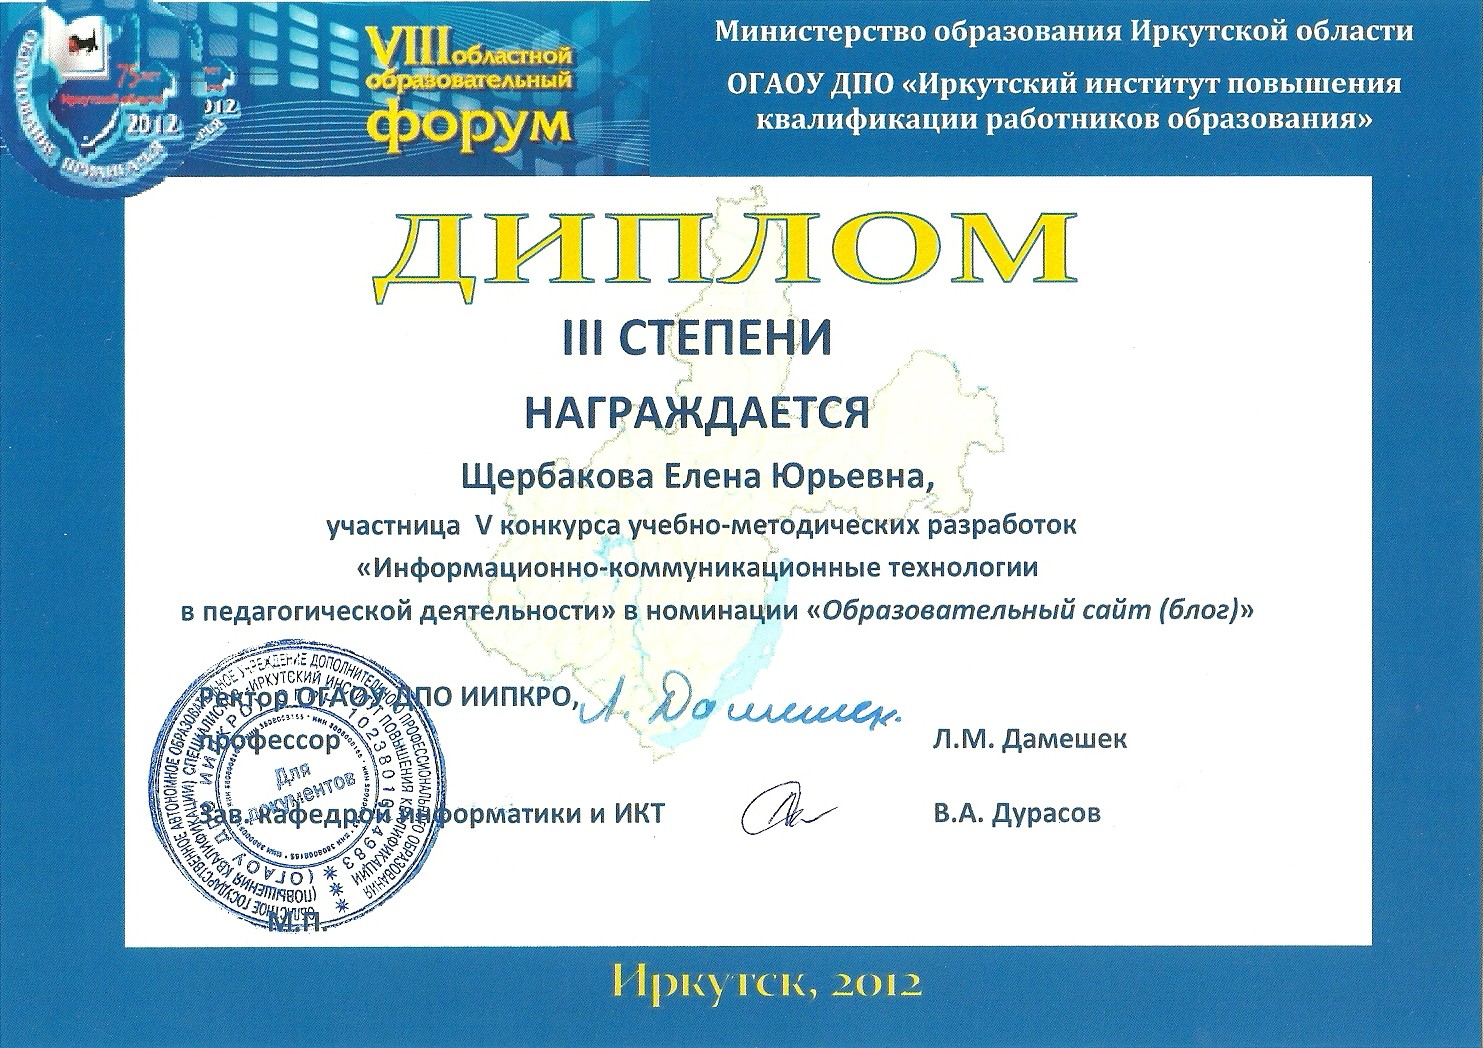 Результаты образовательных конкурсов. Благодарность Министерства образования Иркутской области.